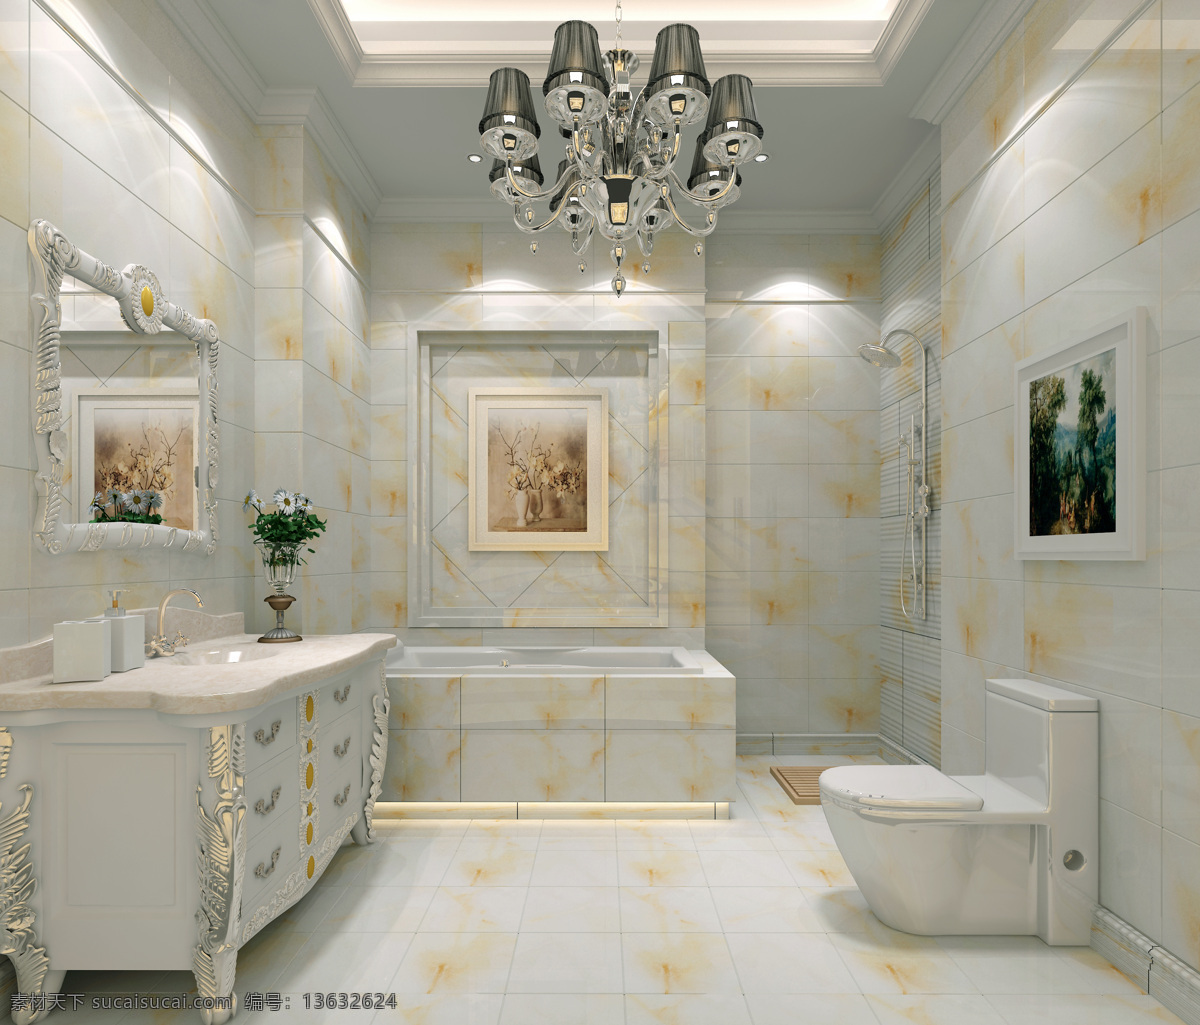 空间设计 大理石 环境设计 简洁 欧式风格 室内设计 卫浴 现代 家居装饰素材